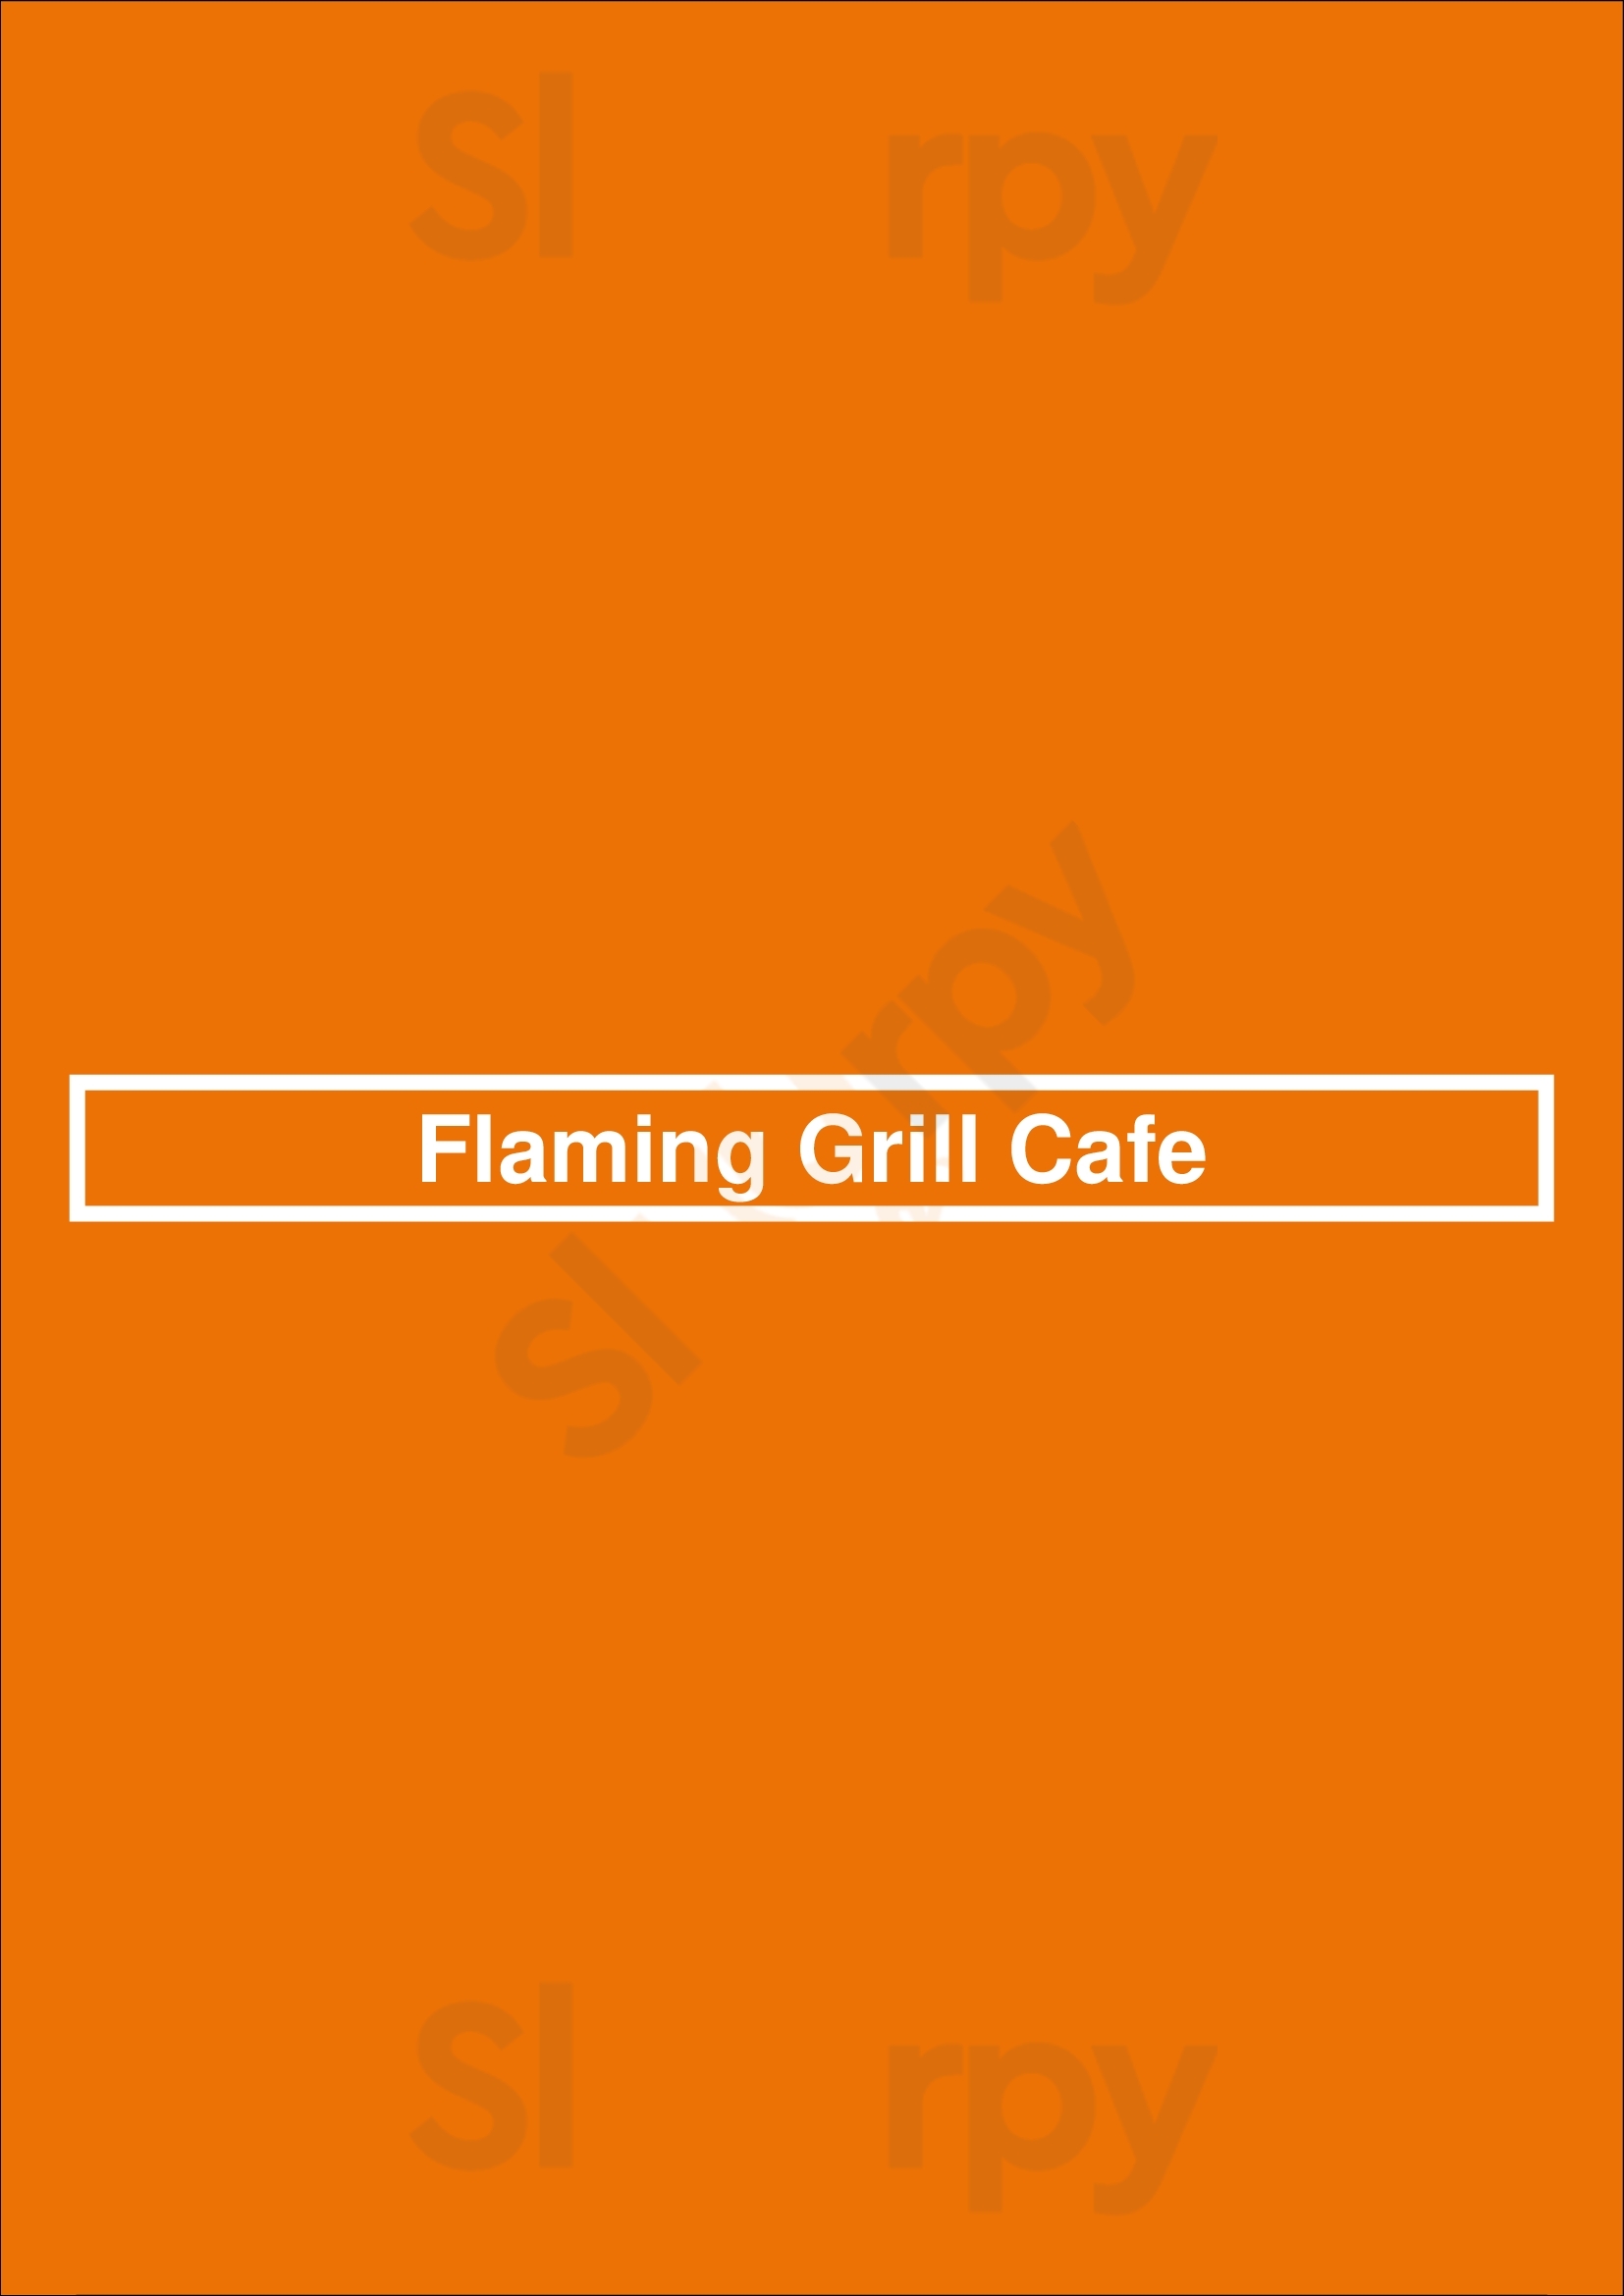 Flaming Grill Cafe Sacramento Menu - 1